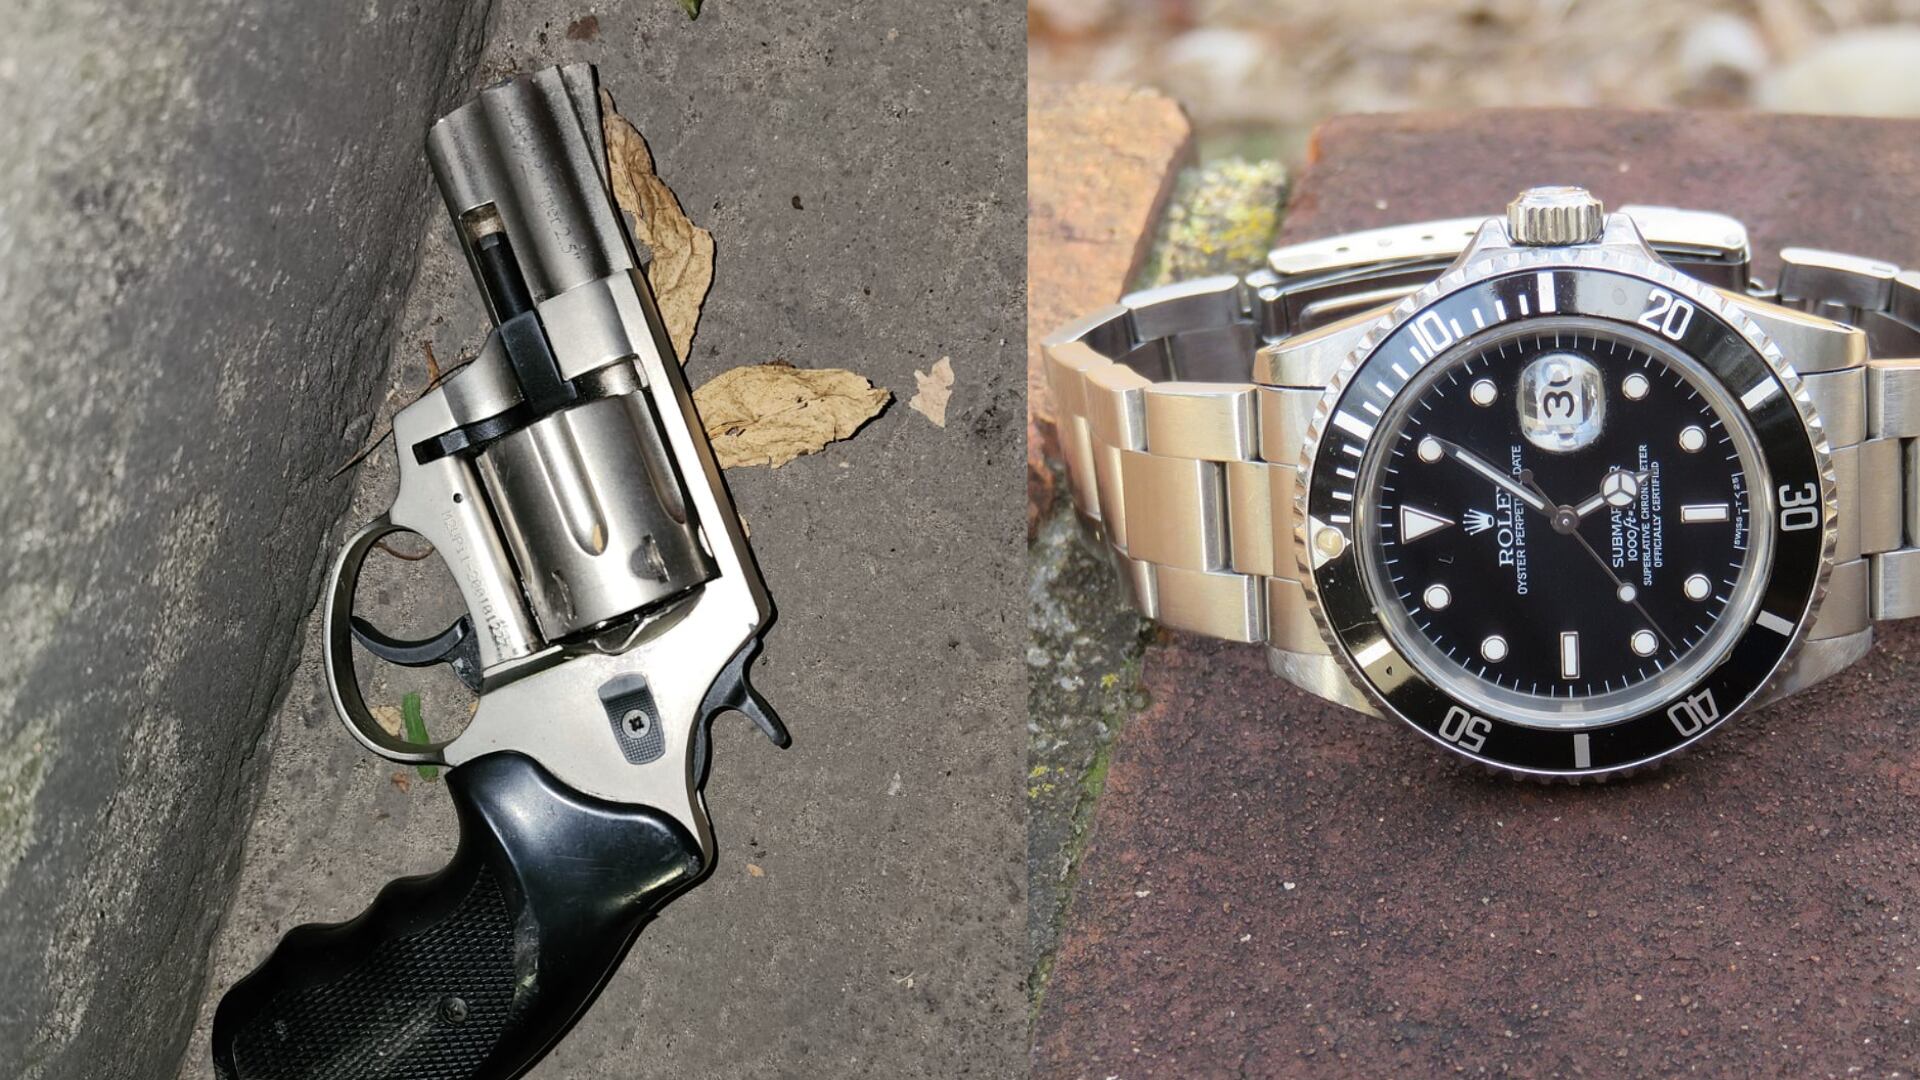 Ladrón hurtó reloj Rolex a turistas sin percatarse que estaba la Policía y le dieron de baja